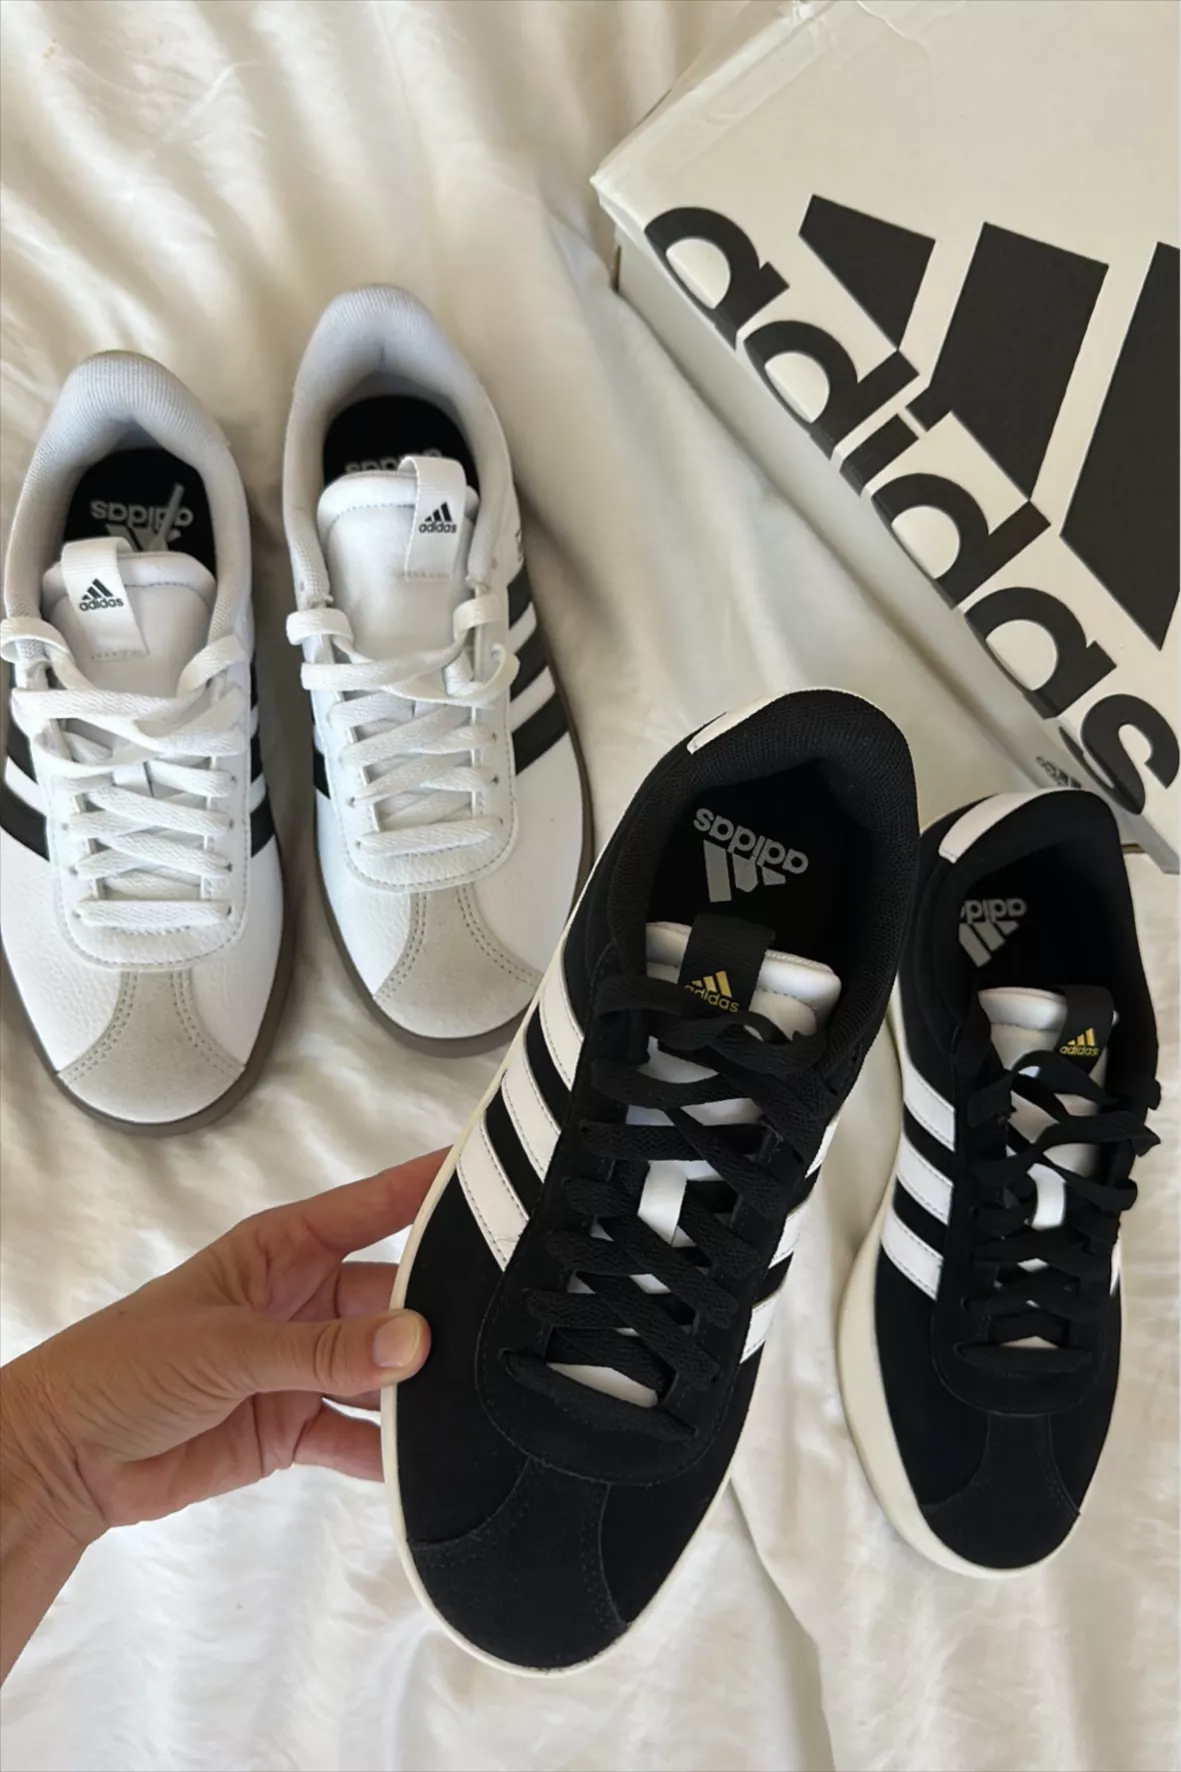 adidas - VL Court 2.0 - Beige Sneaker